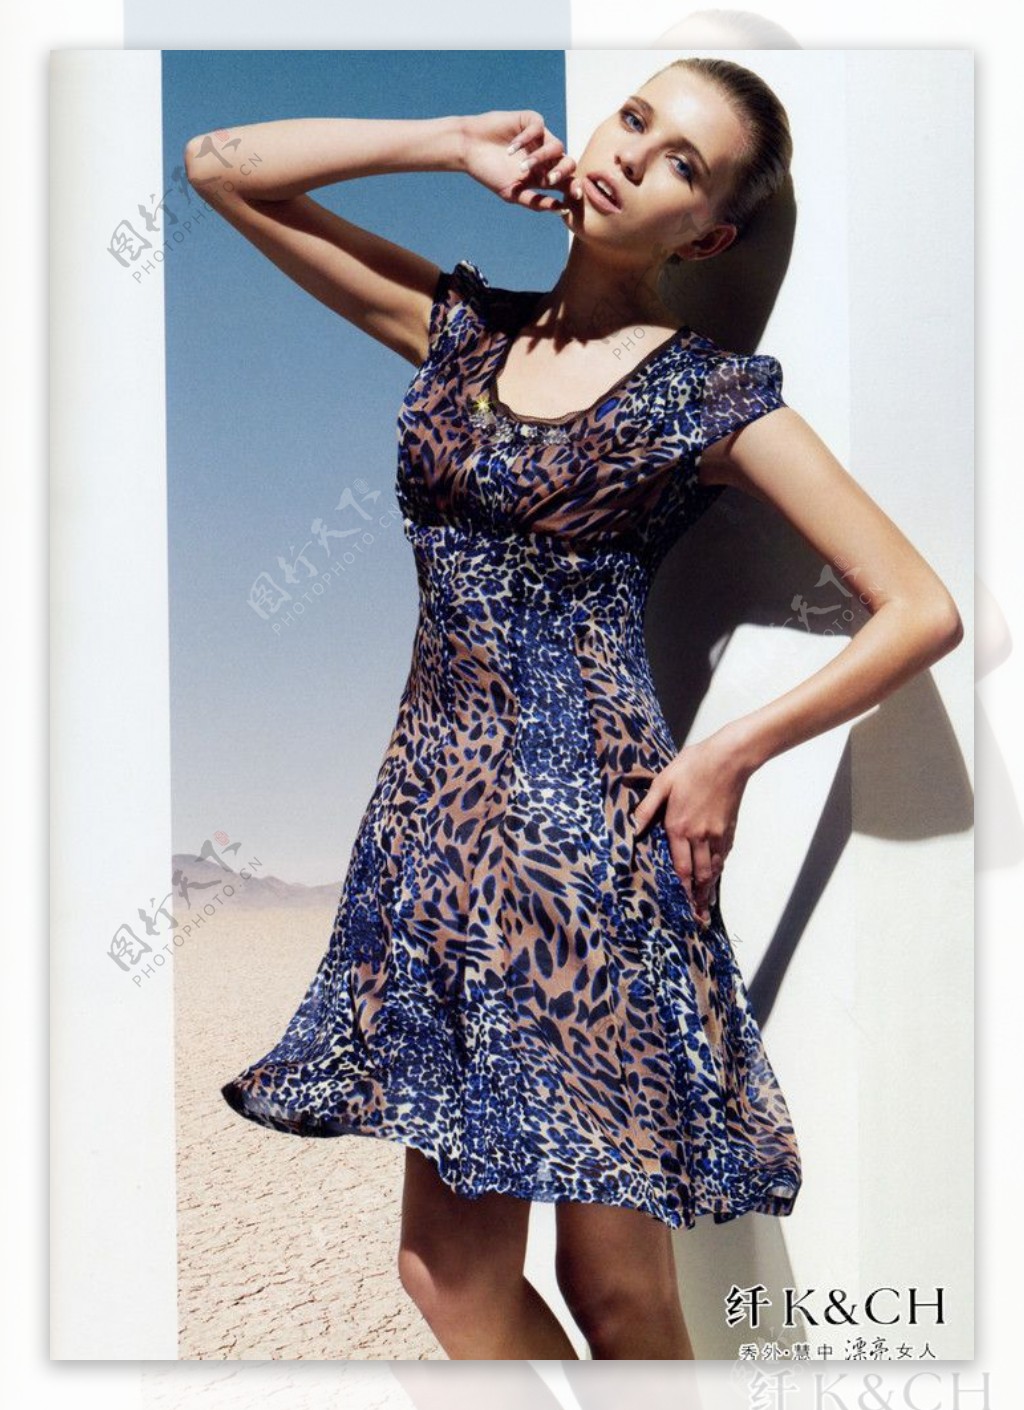 纤形象代言人LOGO国际时尚女装欧美女模2010年时尚夏装靓丽时尚休闲裙图片